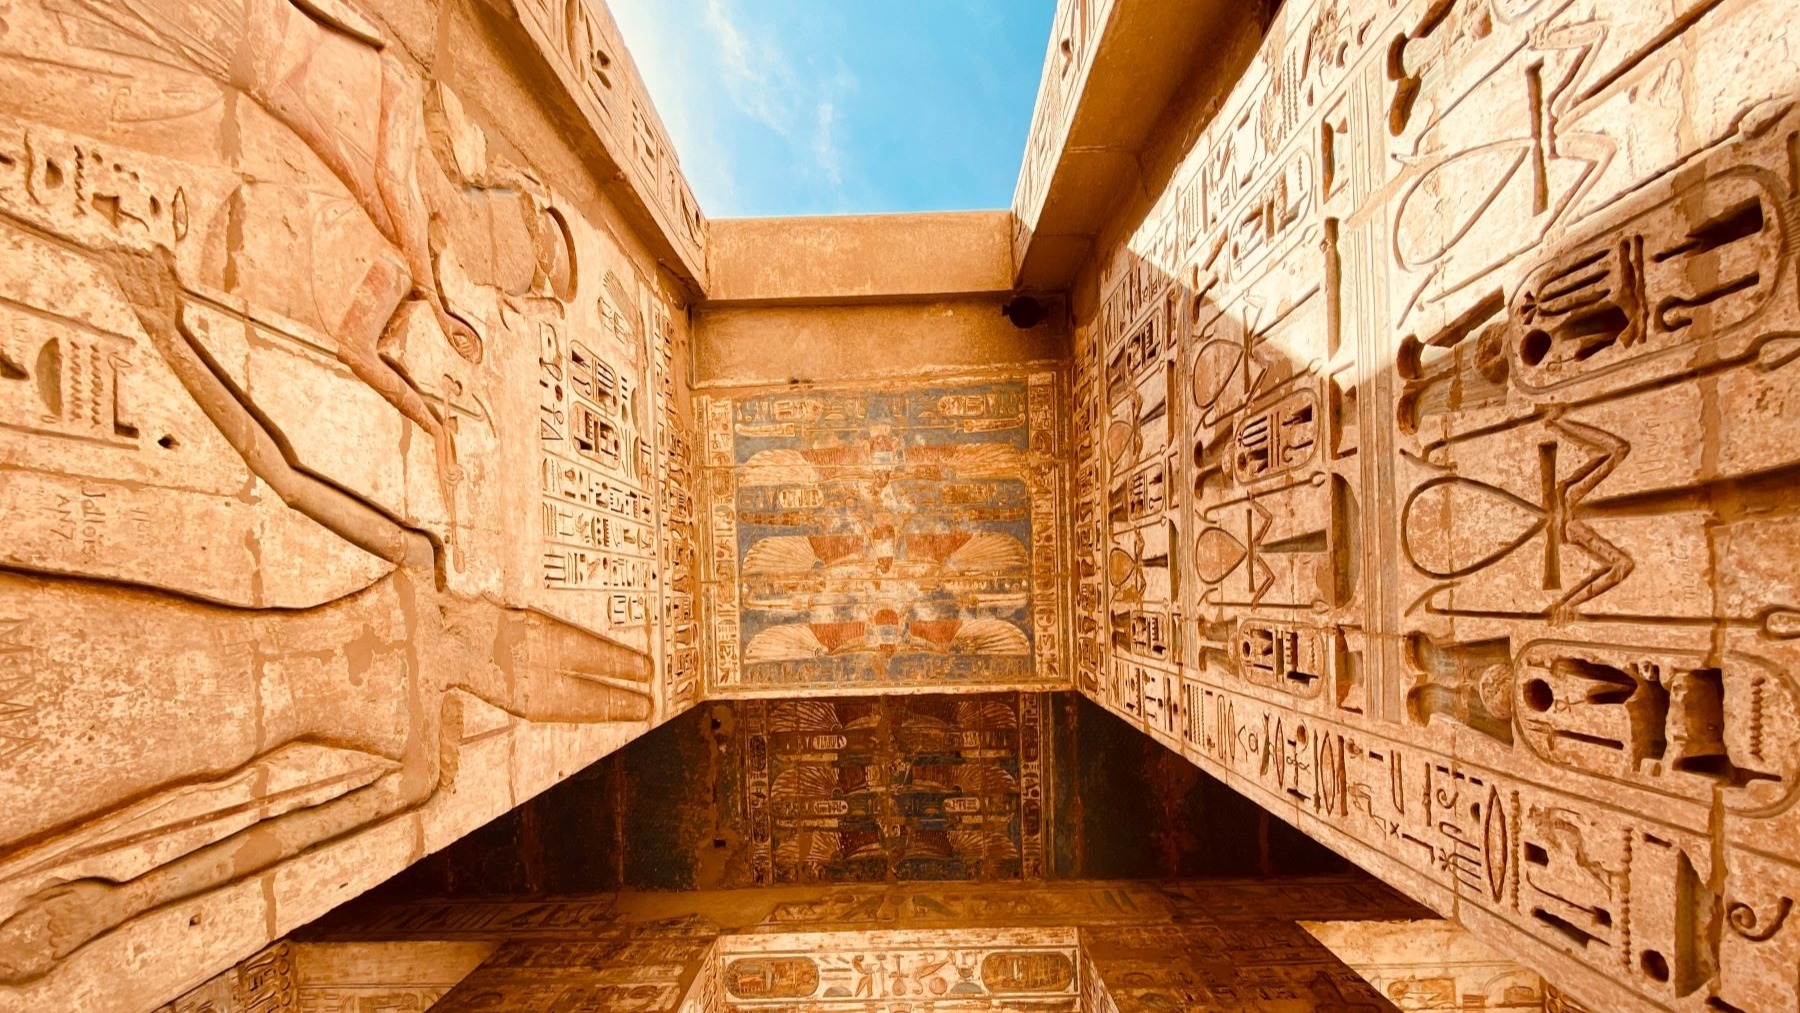 Les vestiges d'un atelier de céramique découverts en Égypte